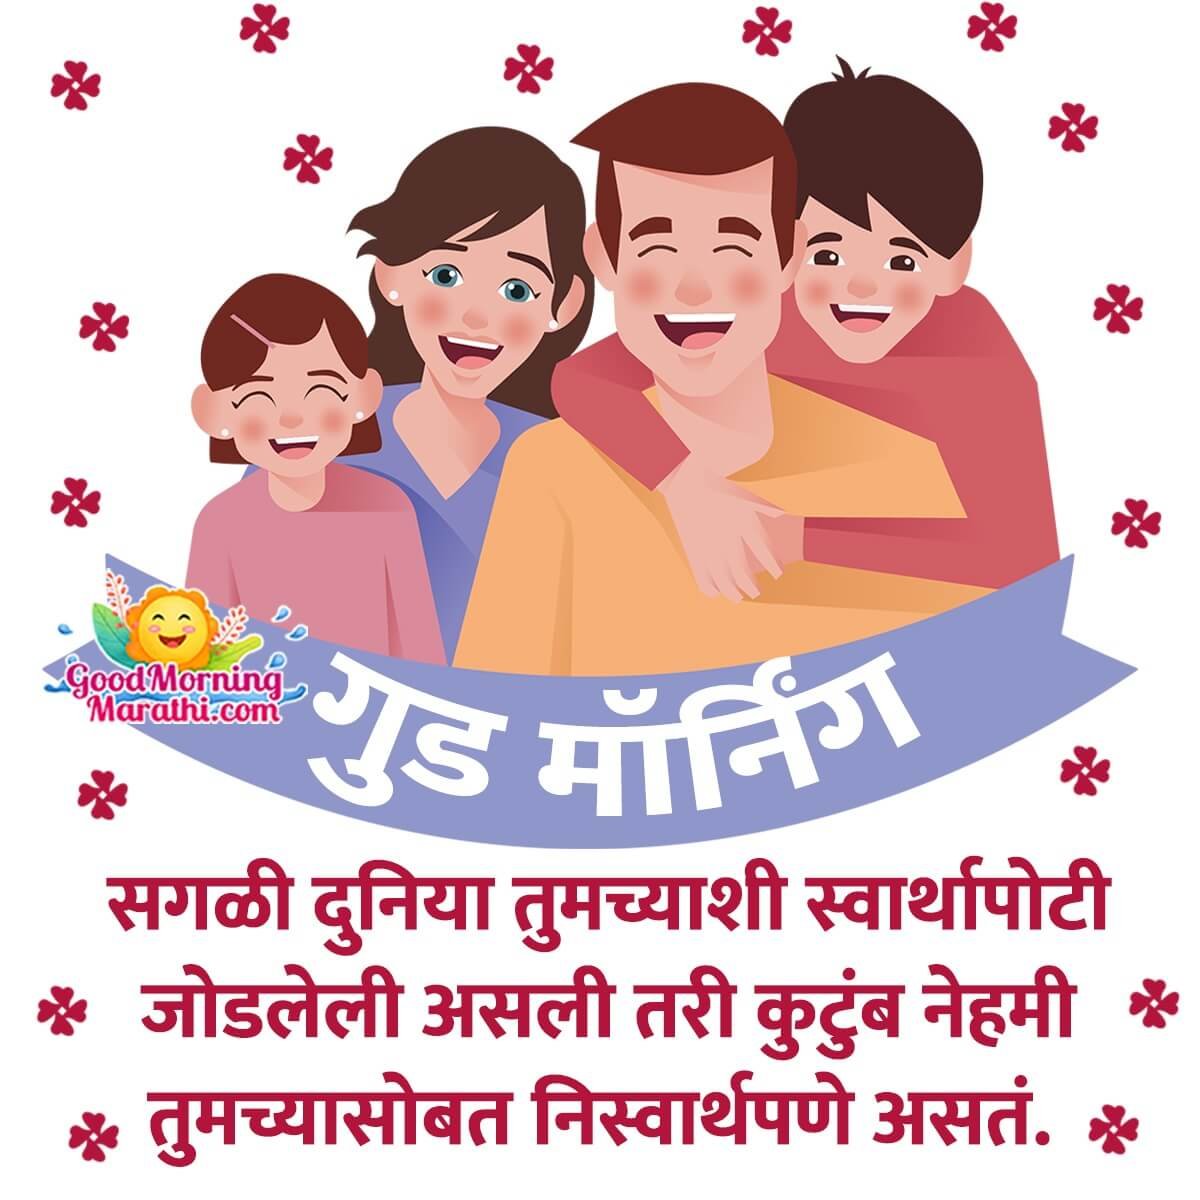 Good Morning Family Marathi Message